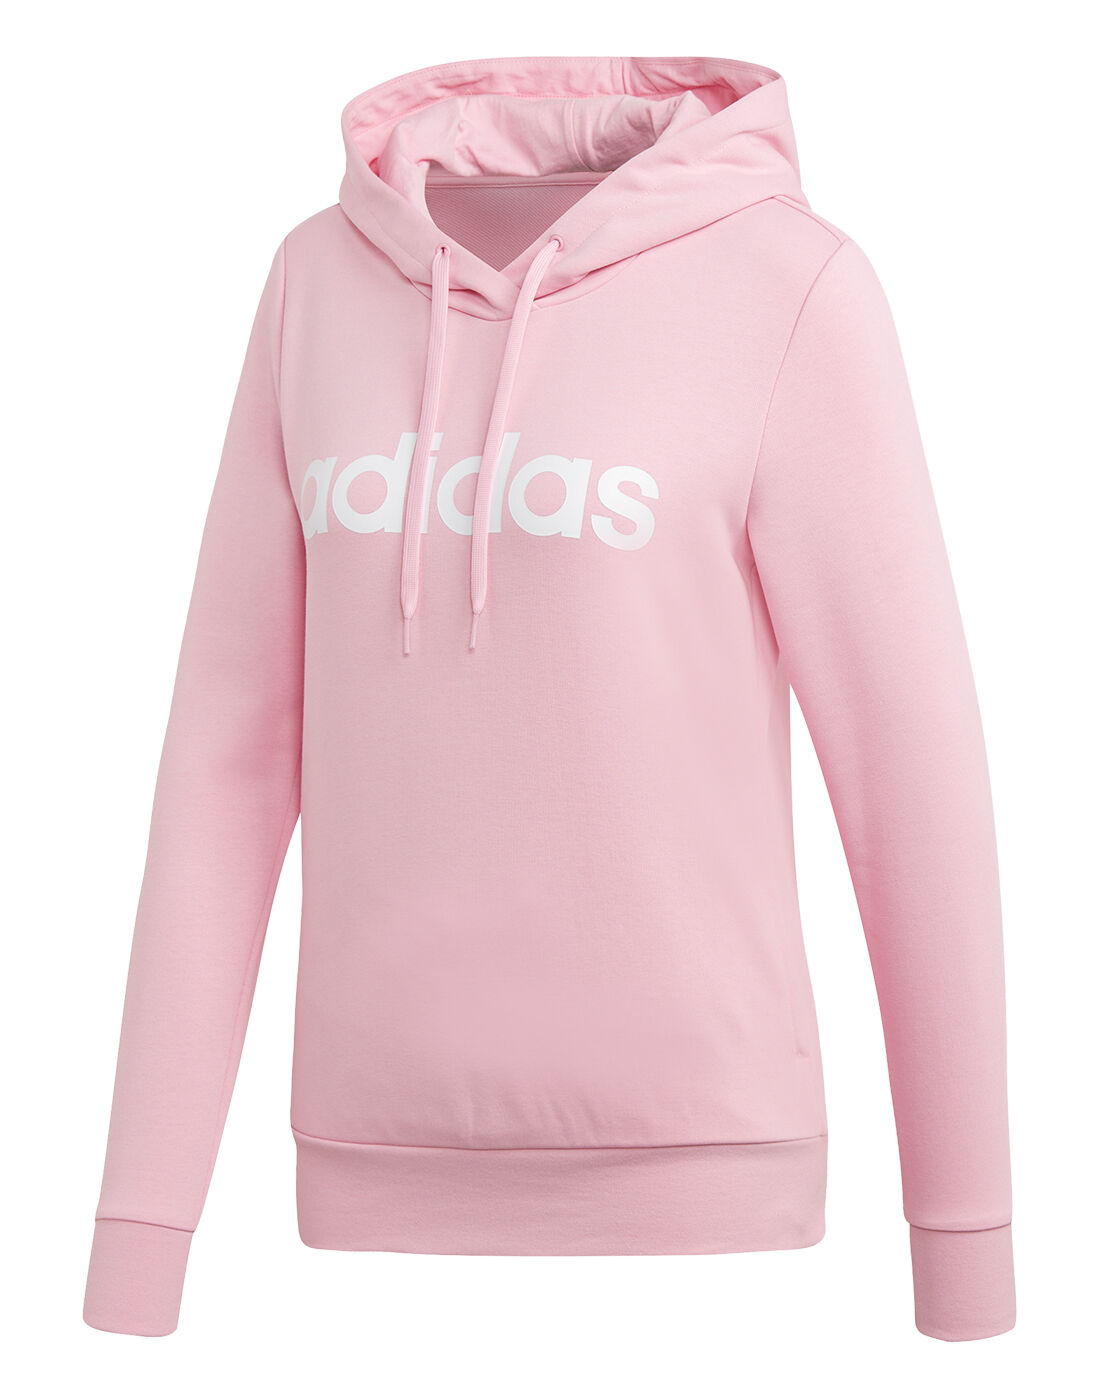 womens pink adidas hoodie